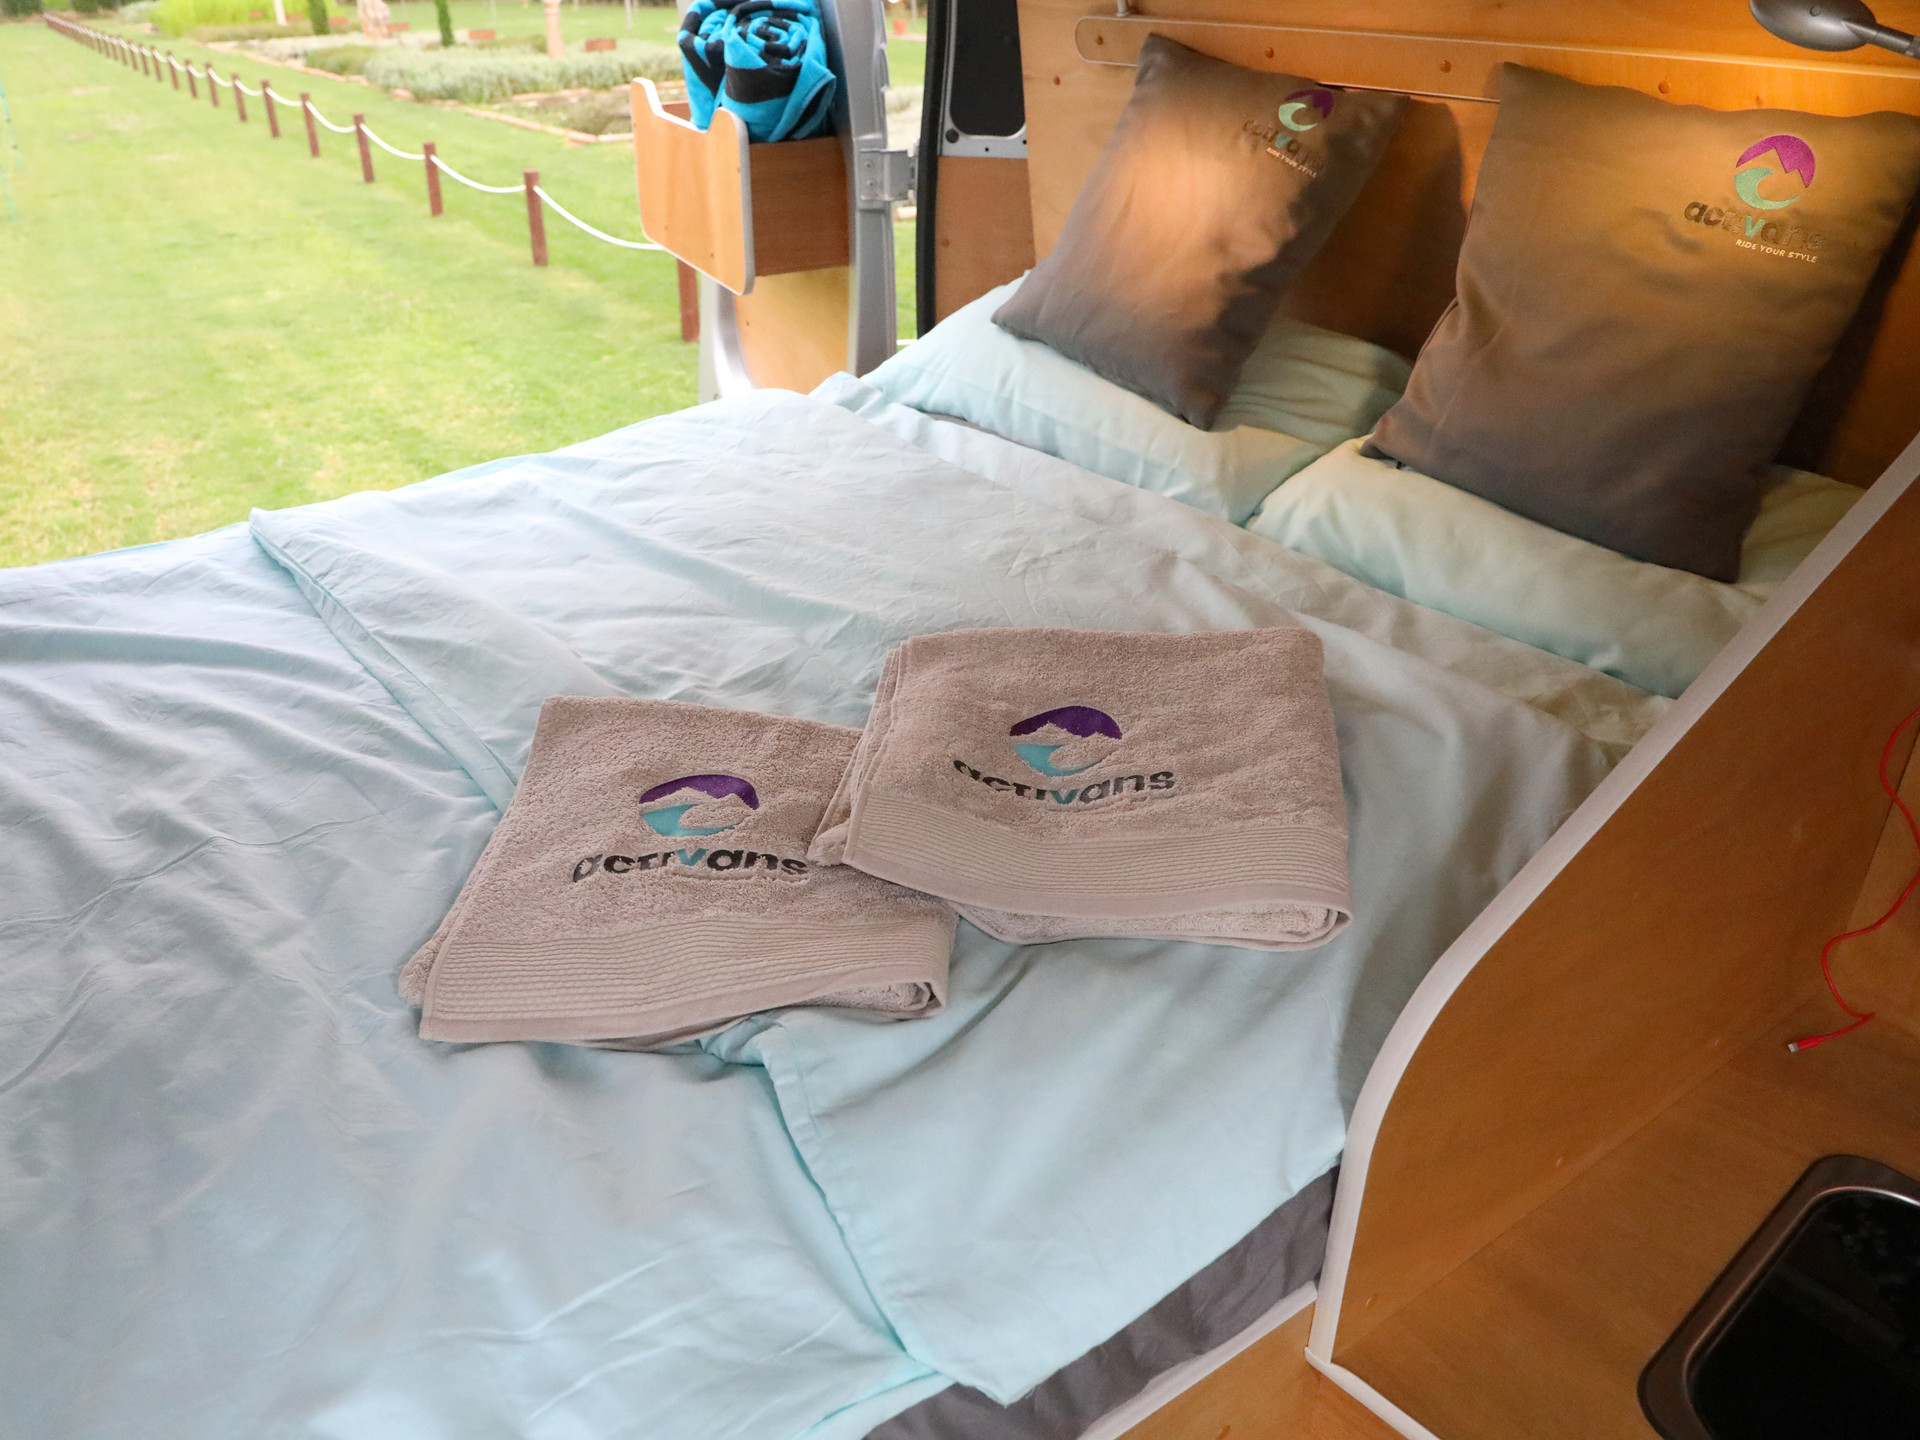 Els llits estan fets en recollir l'autocaravana.